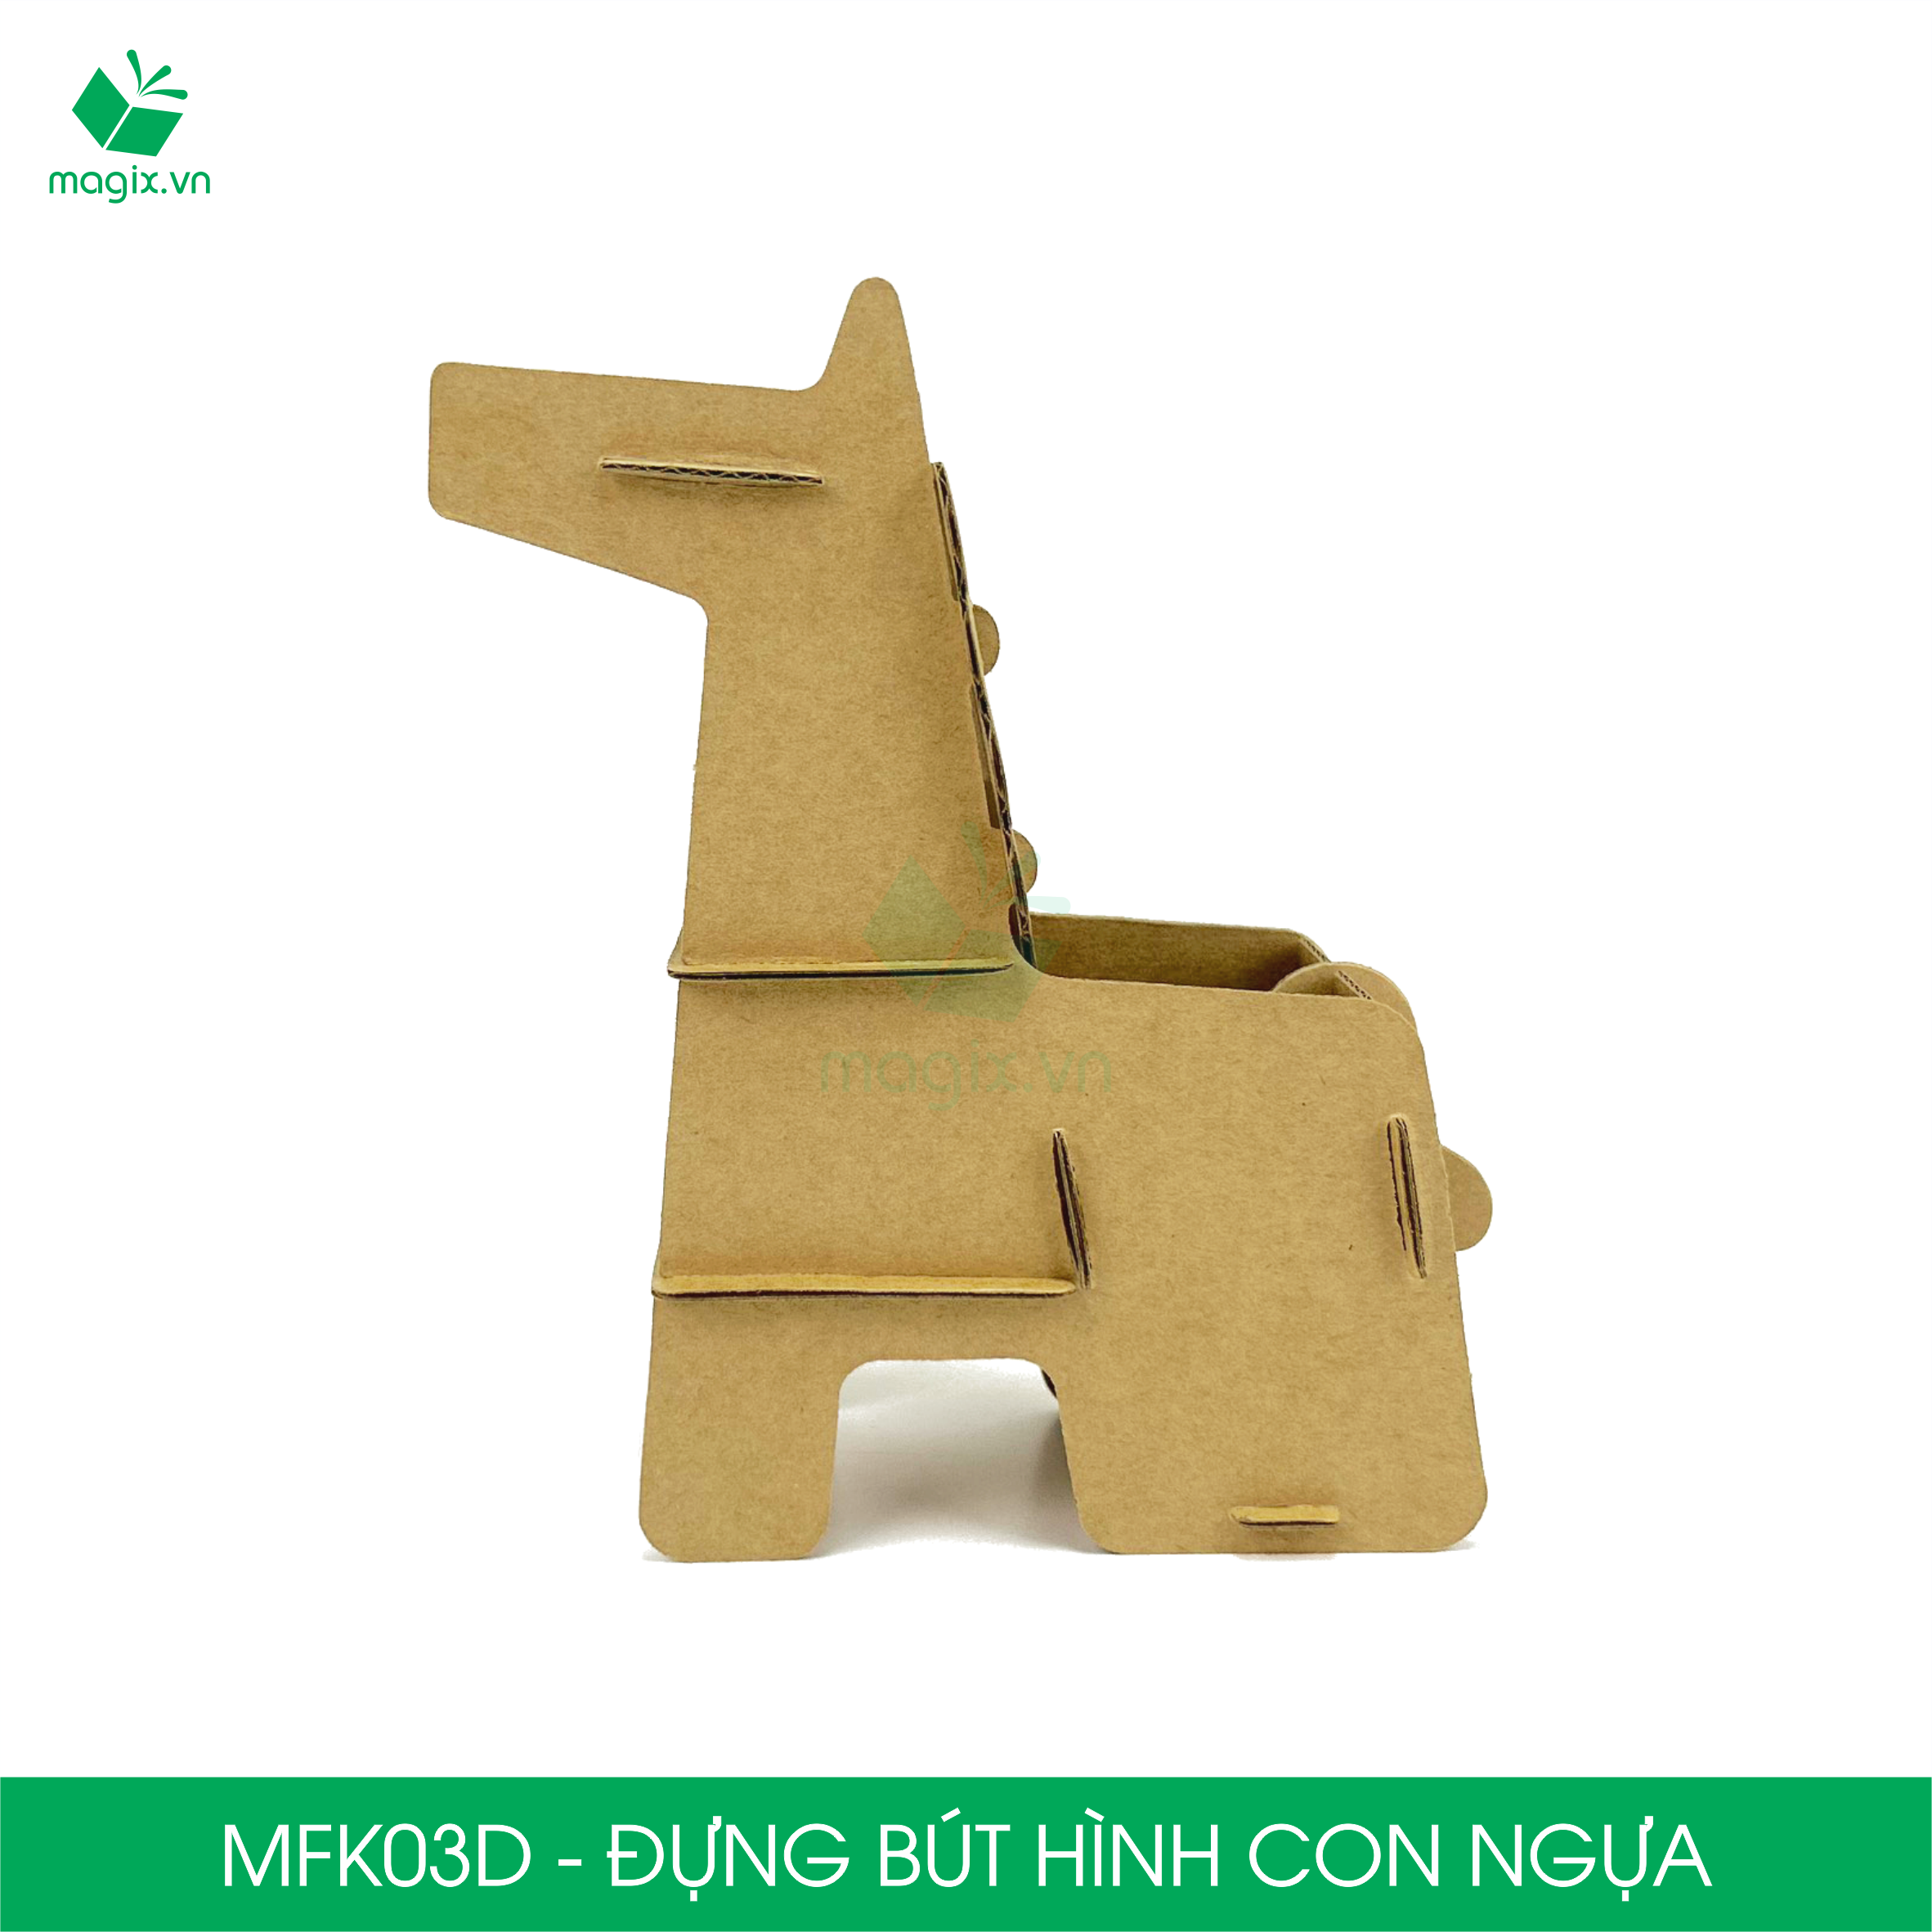 MFK03D - Đựng bút lắp ráp hình con ngựa, đồ đựng bút hình thú bằng giấy carton siêu cứng